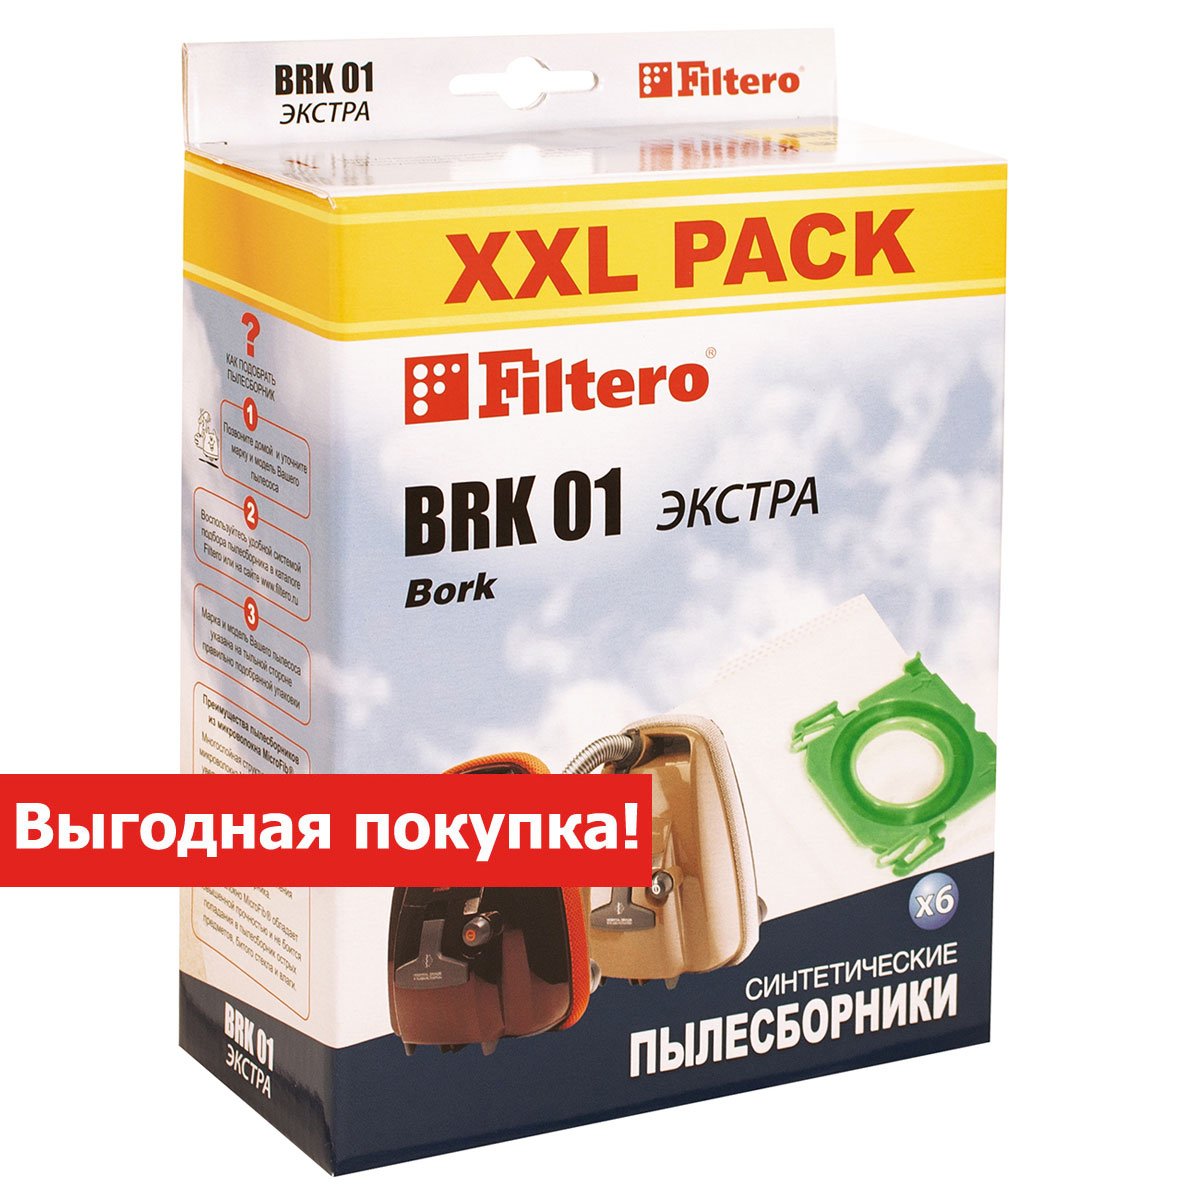 Мешки-пылесборники Filtero BRK 01 XXL Pack ЭКСТРА, 6 шт, синтетические, для пылесосов Bork для пылесоса от интернет магазина Filterro.kz